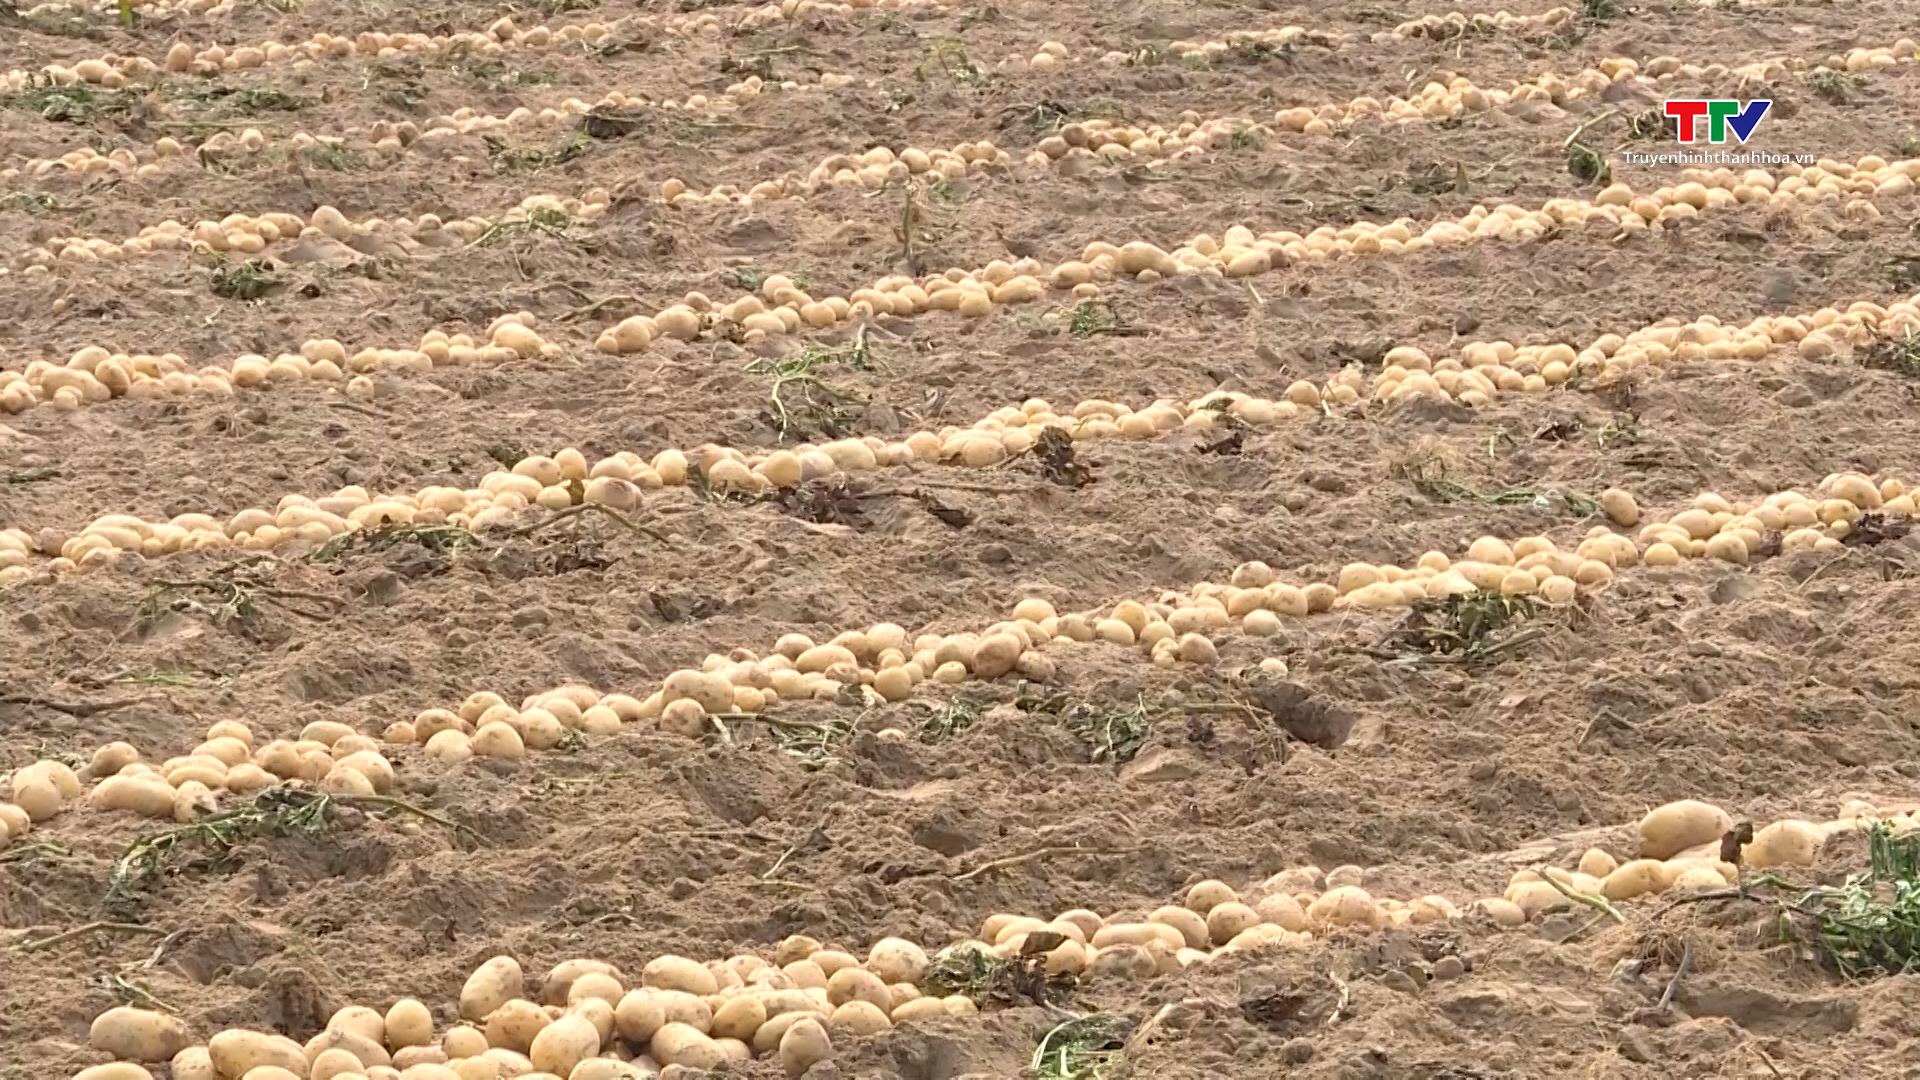 Hiệu quả liên kết sản xuất khoai tây tại Thanh Hóa- Ảnh 3.